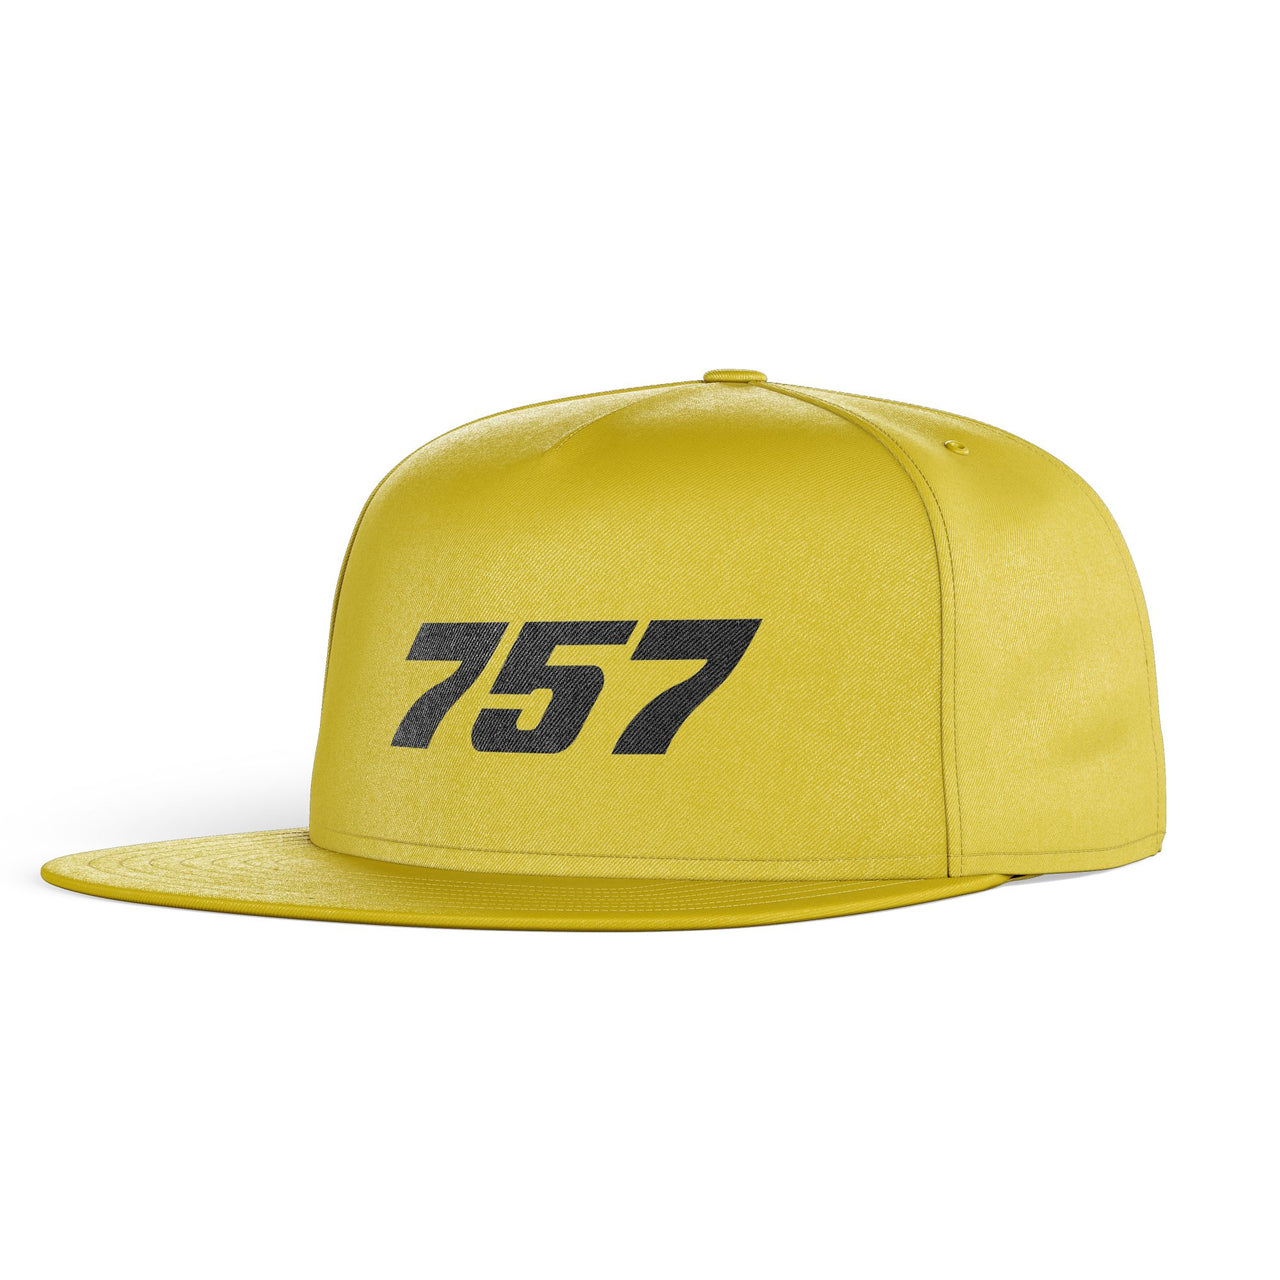 757 Flat Text Designed Snapback Caps & Hats